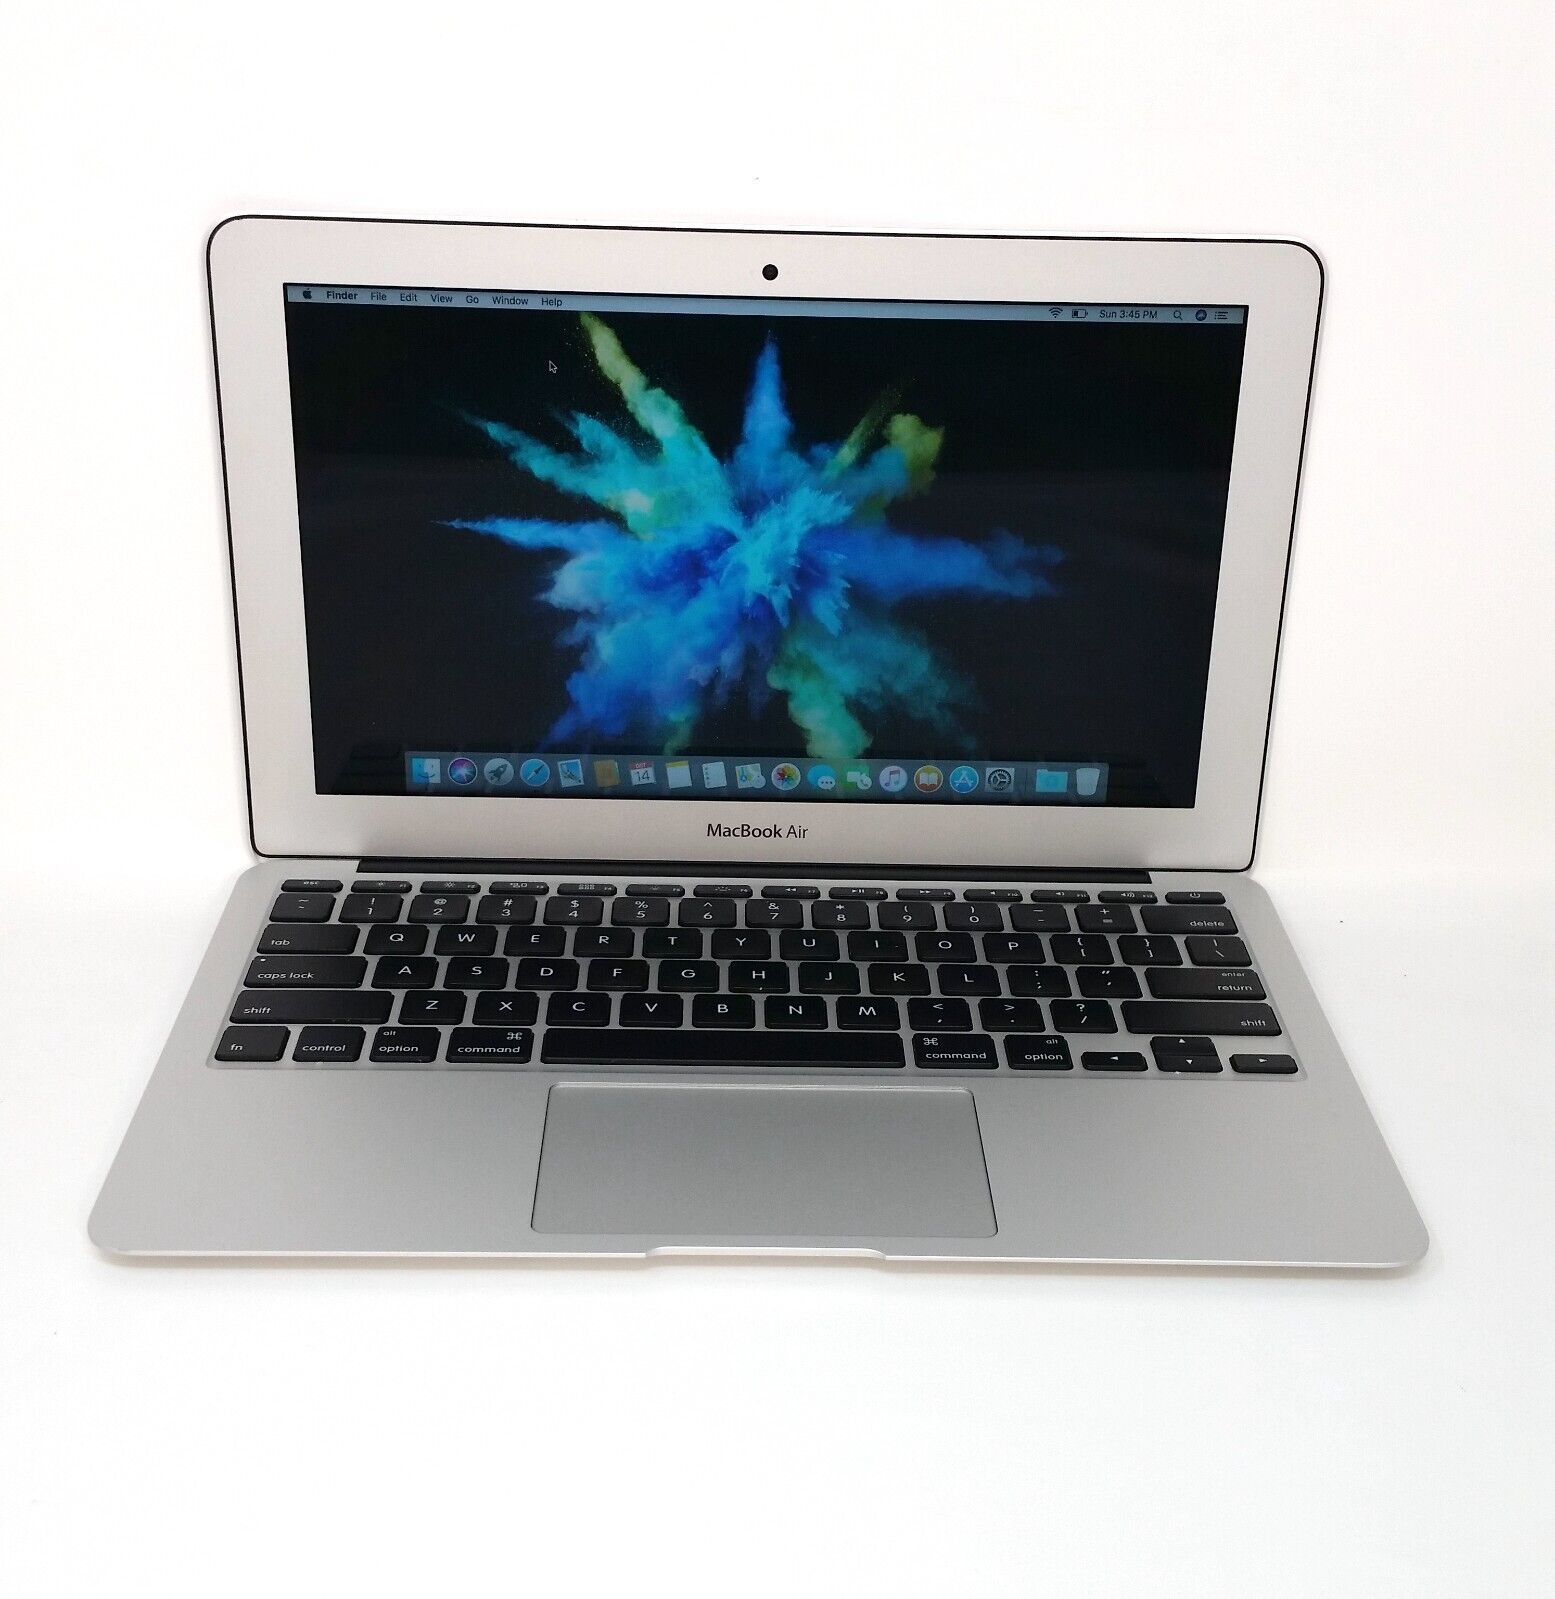  Apple MacBook Air 1.6GHz i5 SSD 128GB MJVM2LL/A* - A1465 Early 2015 Fresh OSX 